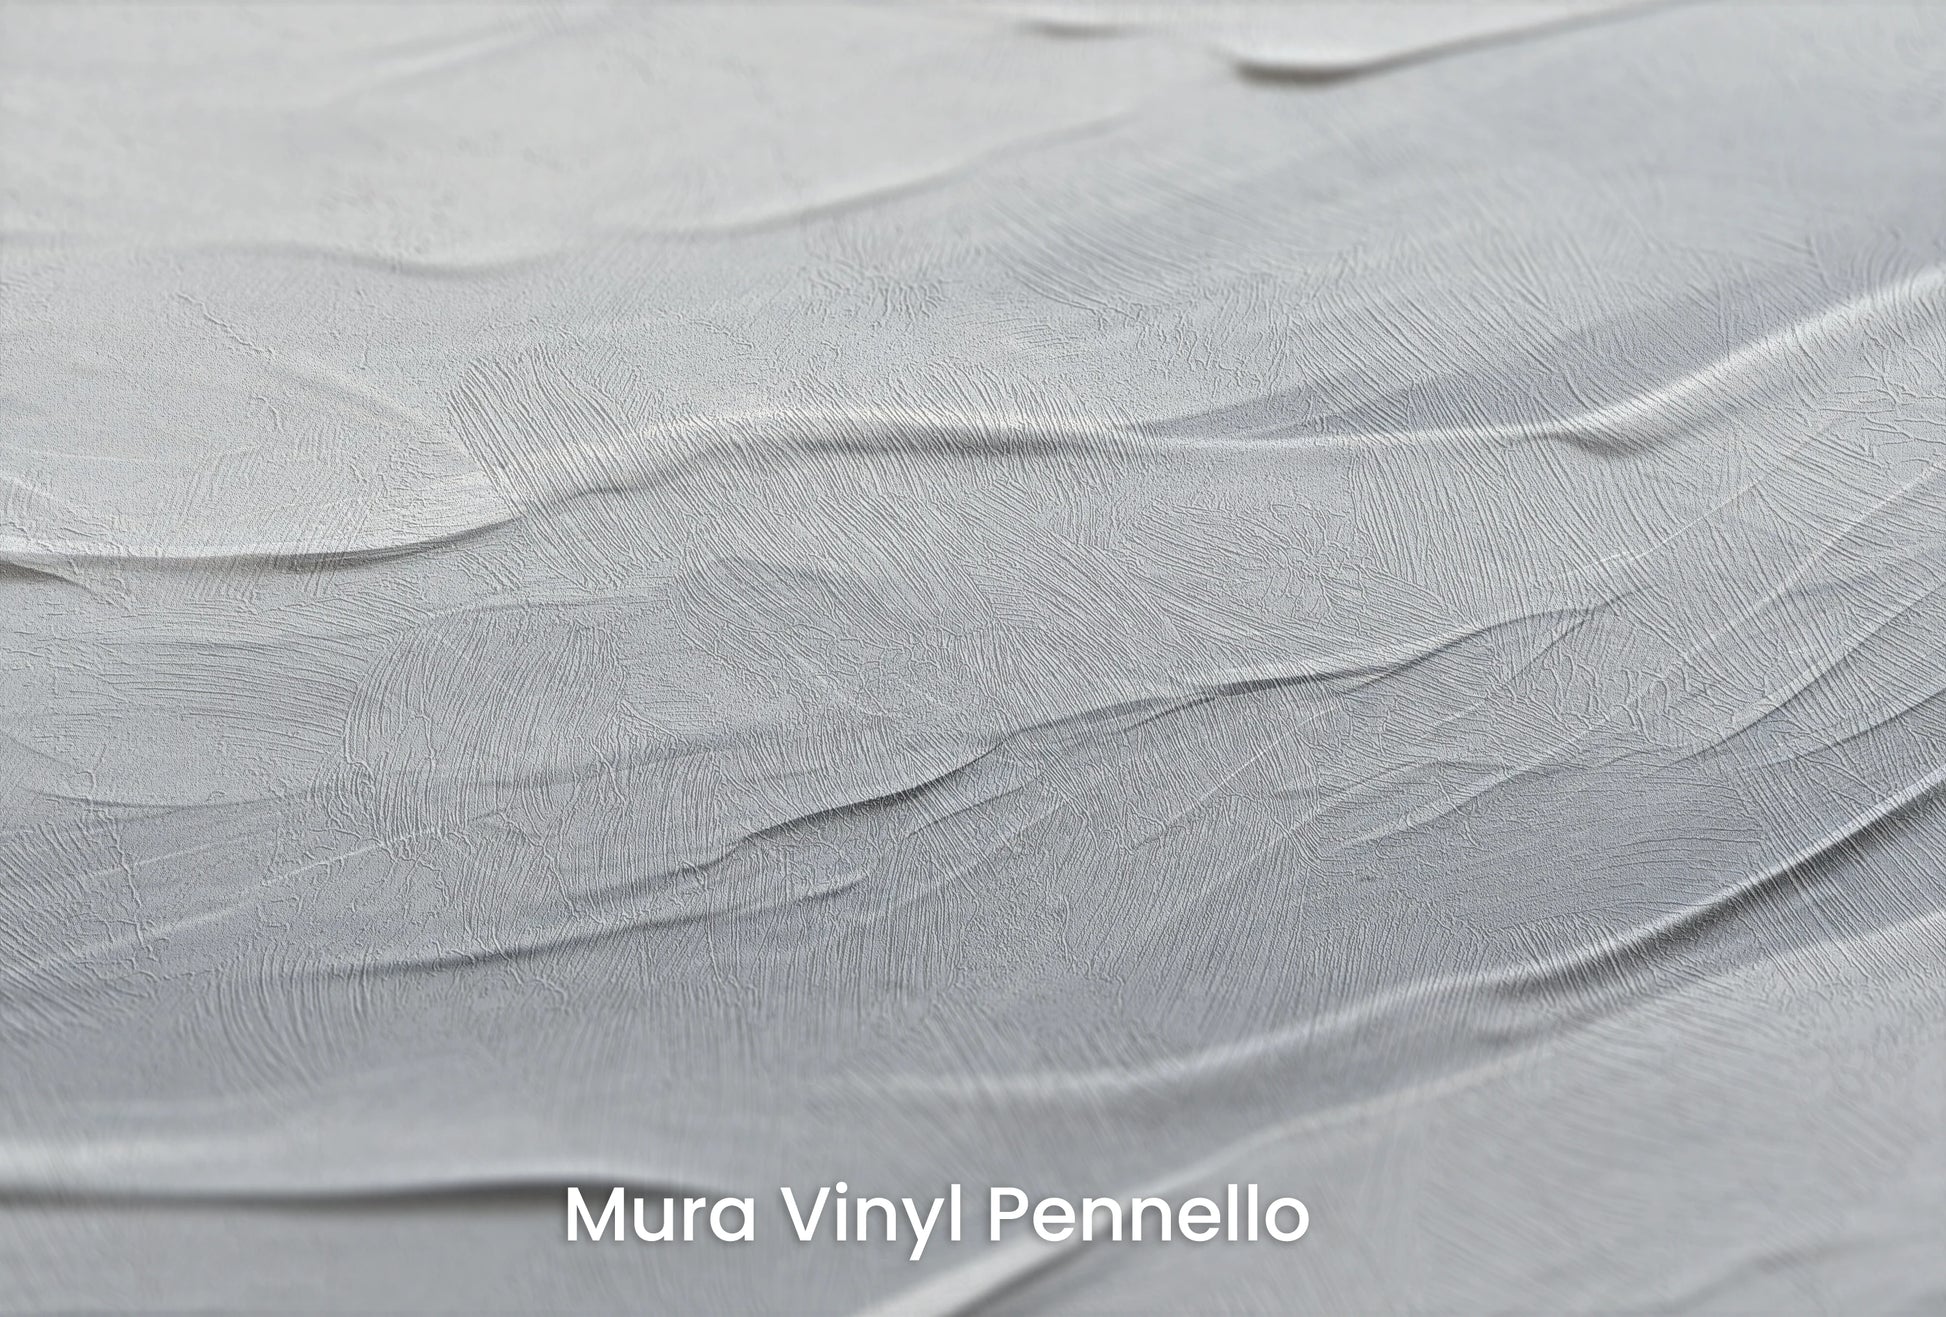 Zbliżenie na artystyczną fototapetę o nazwie Silent Waves na podłożu Mura Vinyl Pennello - faktura pociągnięć pędzla malarskiego.